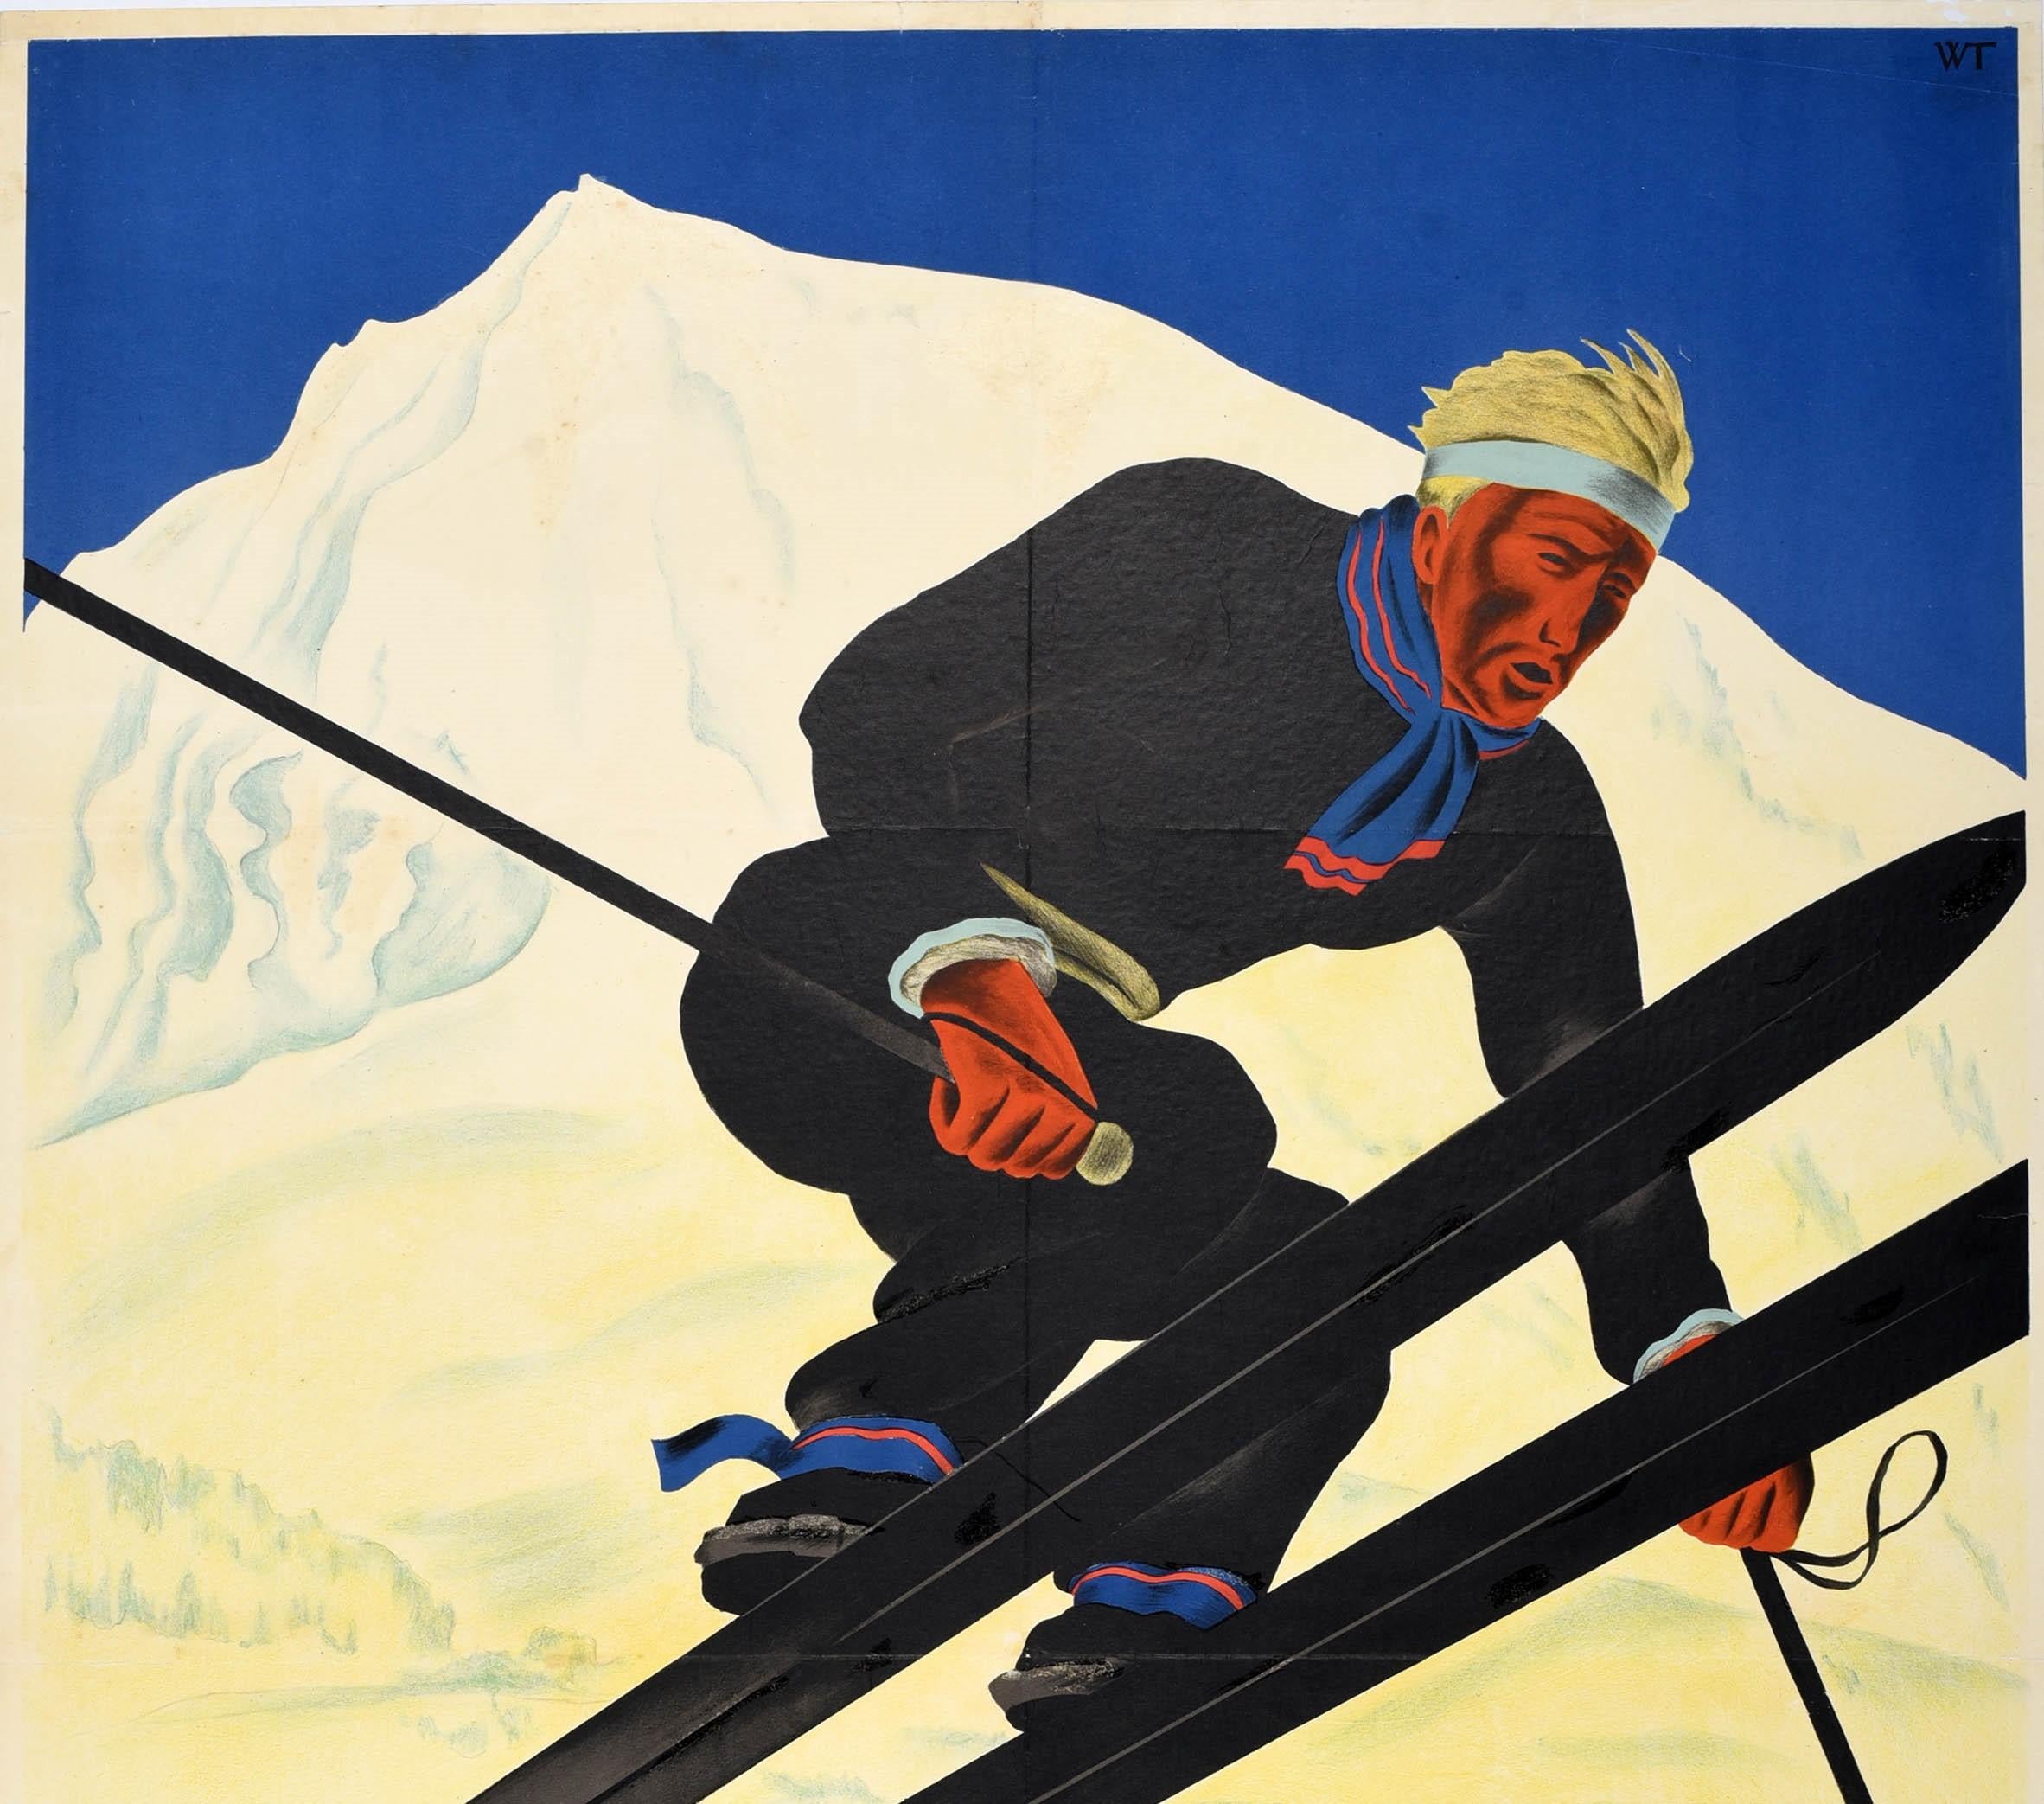 Original Vintage-Ski- und Wintersport-Reiseplakat für das Schweizer Alpendorf im Berner Oberland - Adelboden Suisse 1400m - mit einem dynamischen Design von Willy Trapp (1905-1984), das einen Skifahrer in schwarzem Outfit, einem rot gestreiften